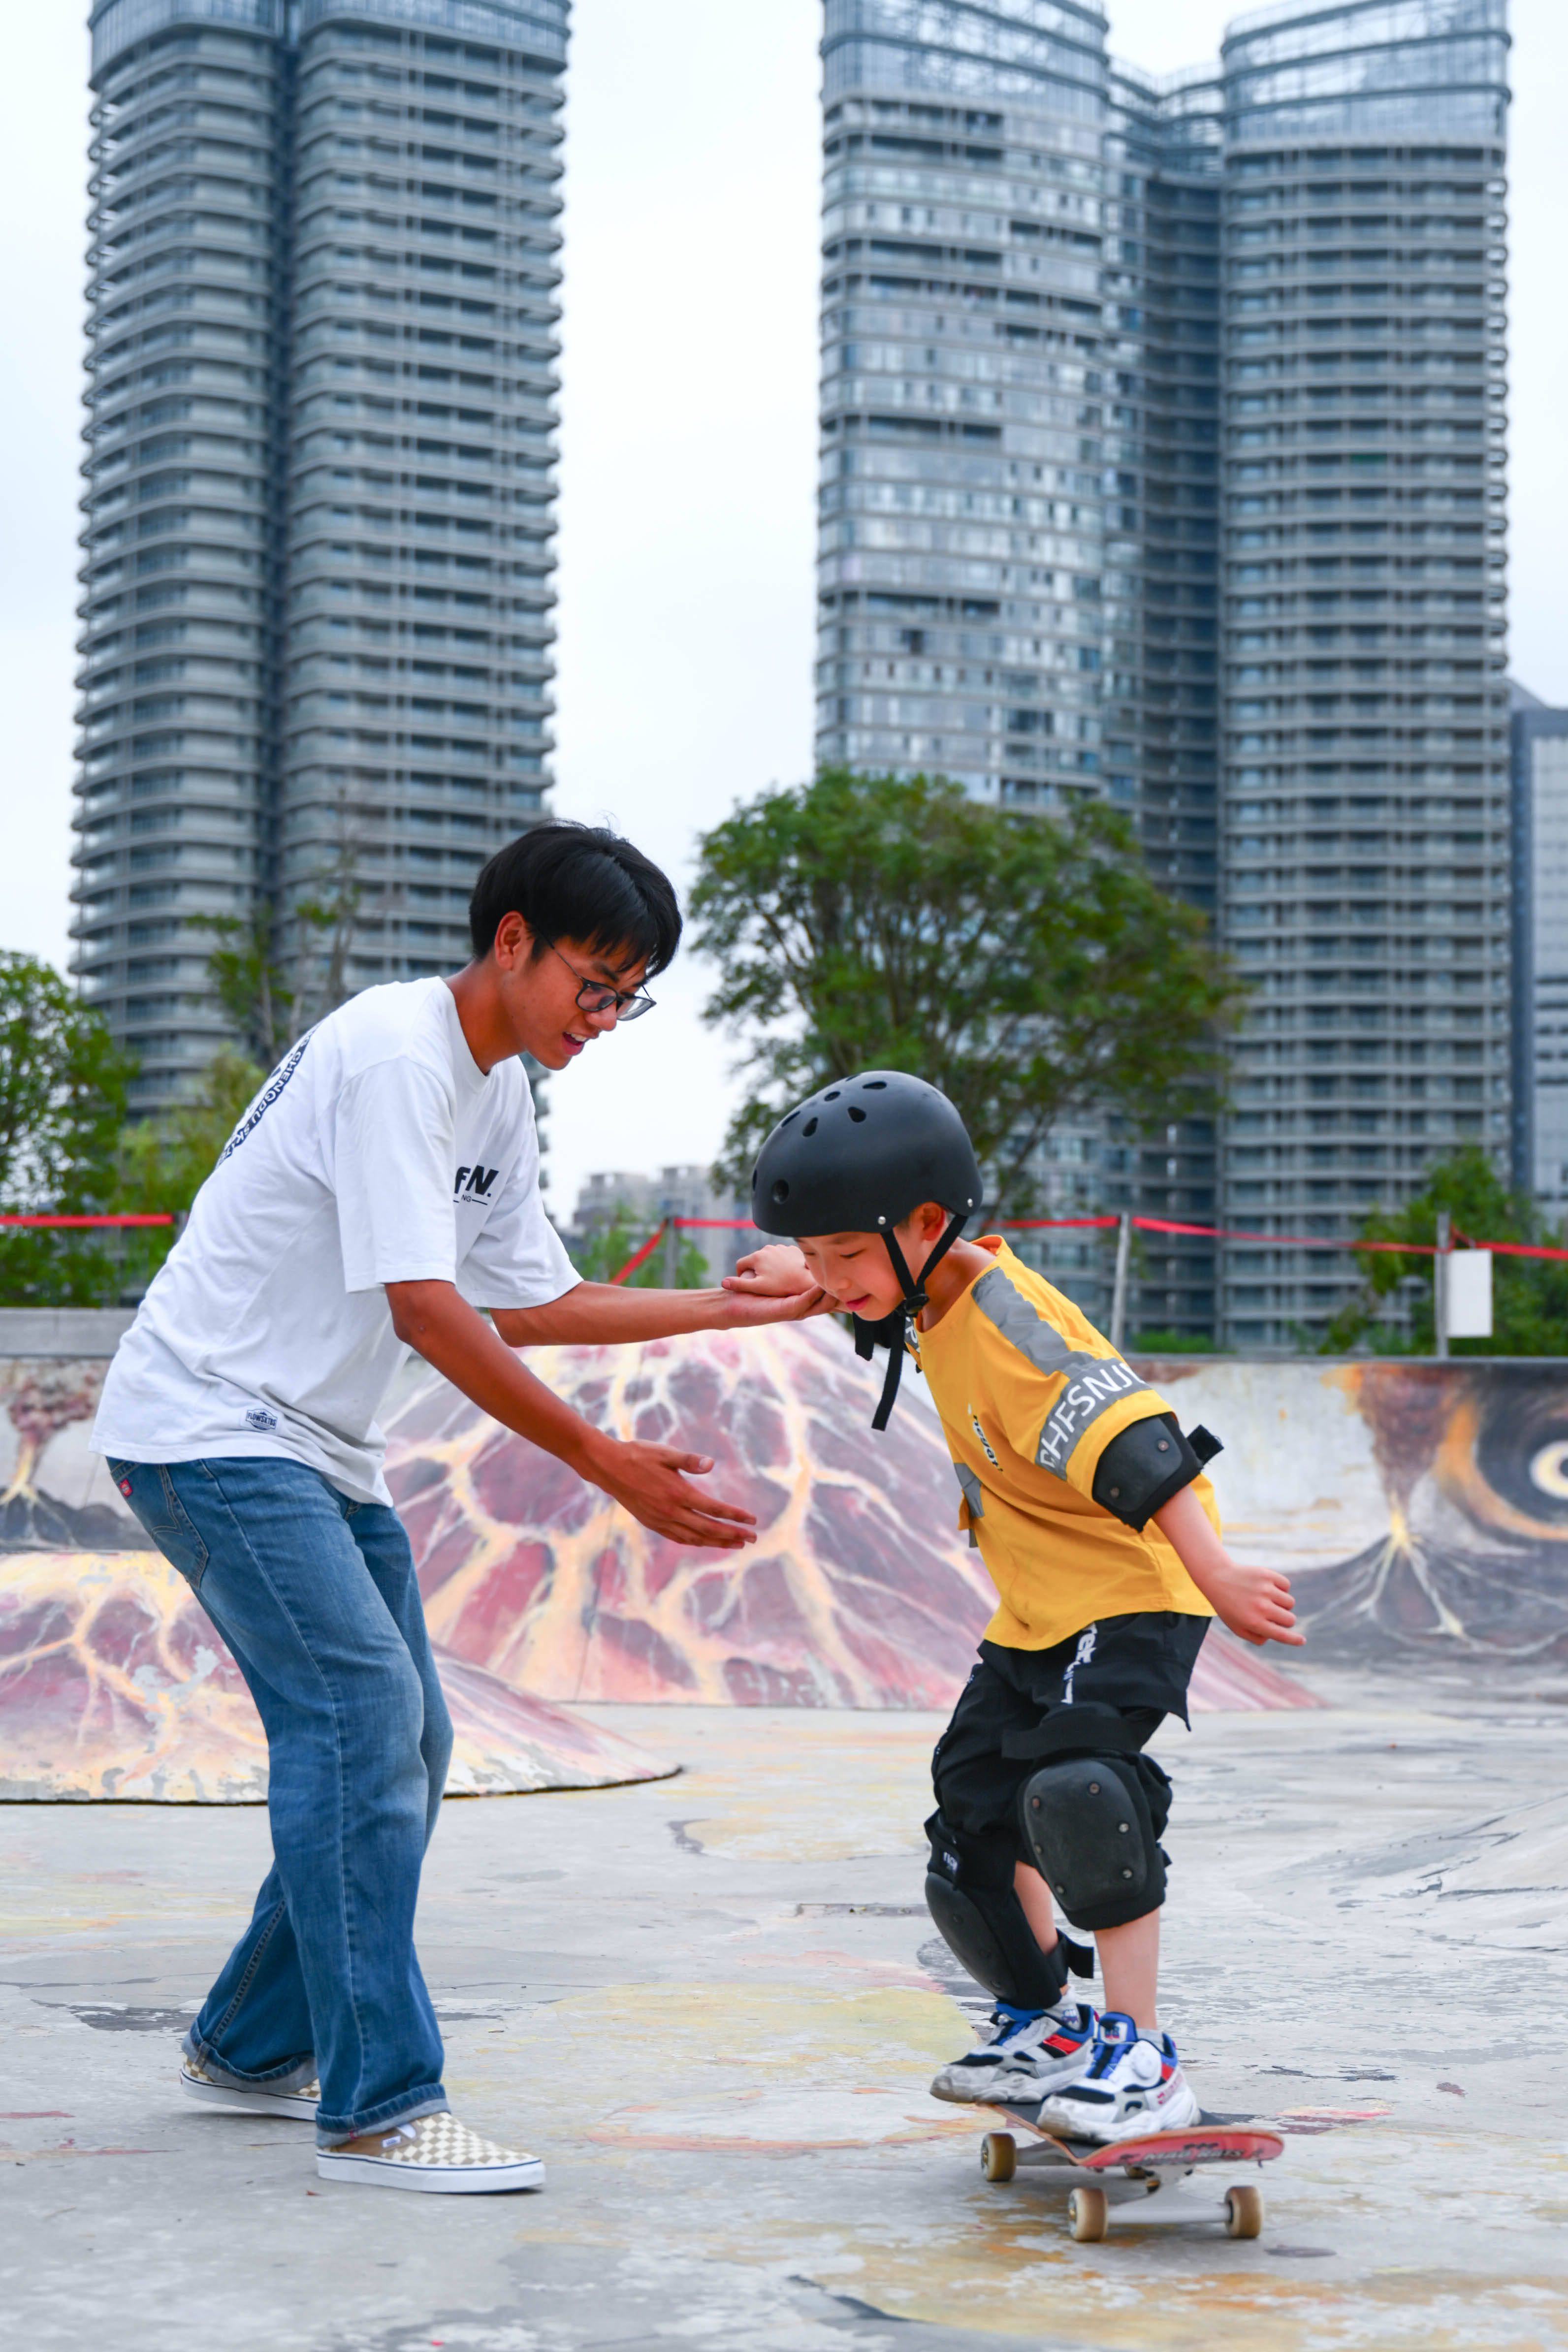 8月16日,一名小朋友在成都江滩公园内玩滑板车